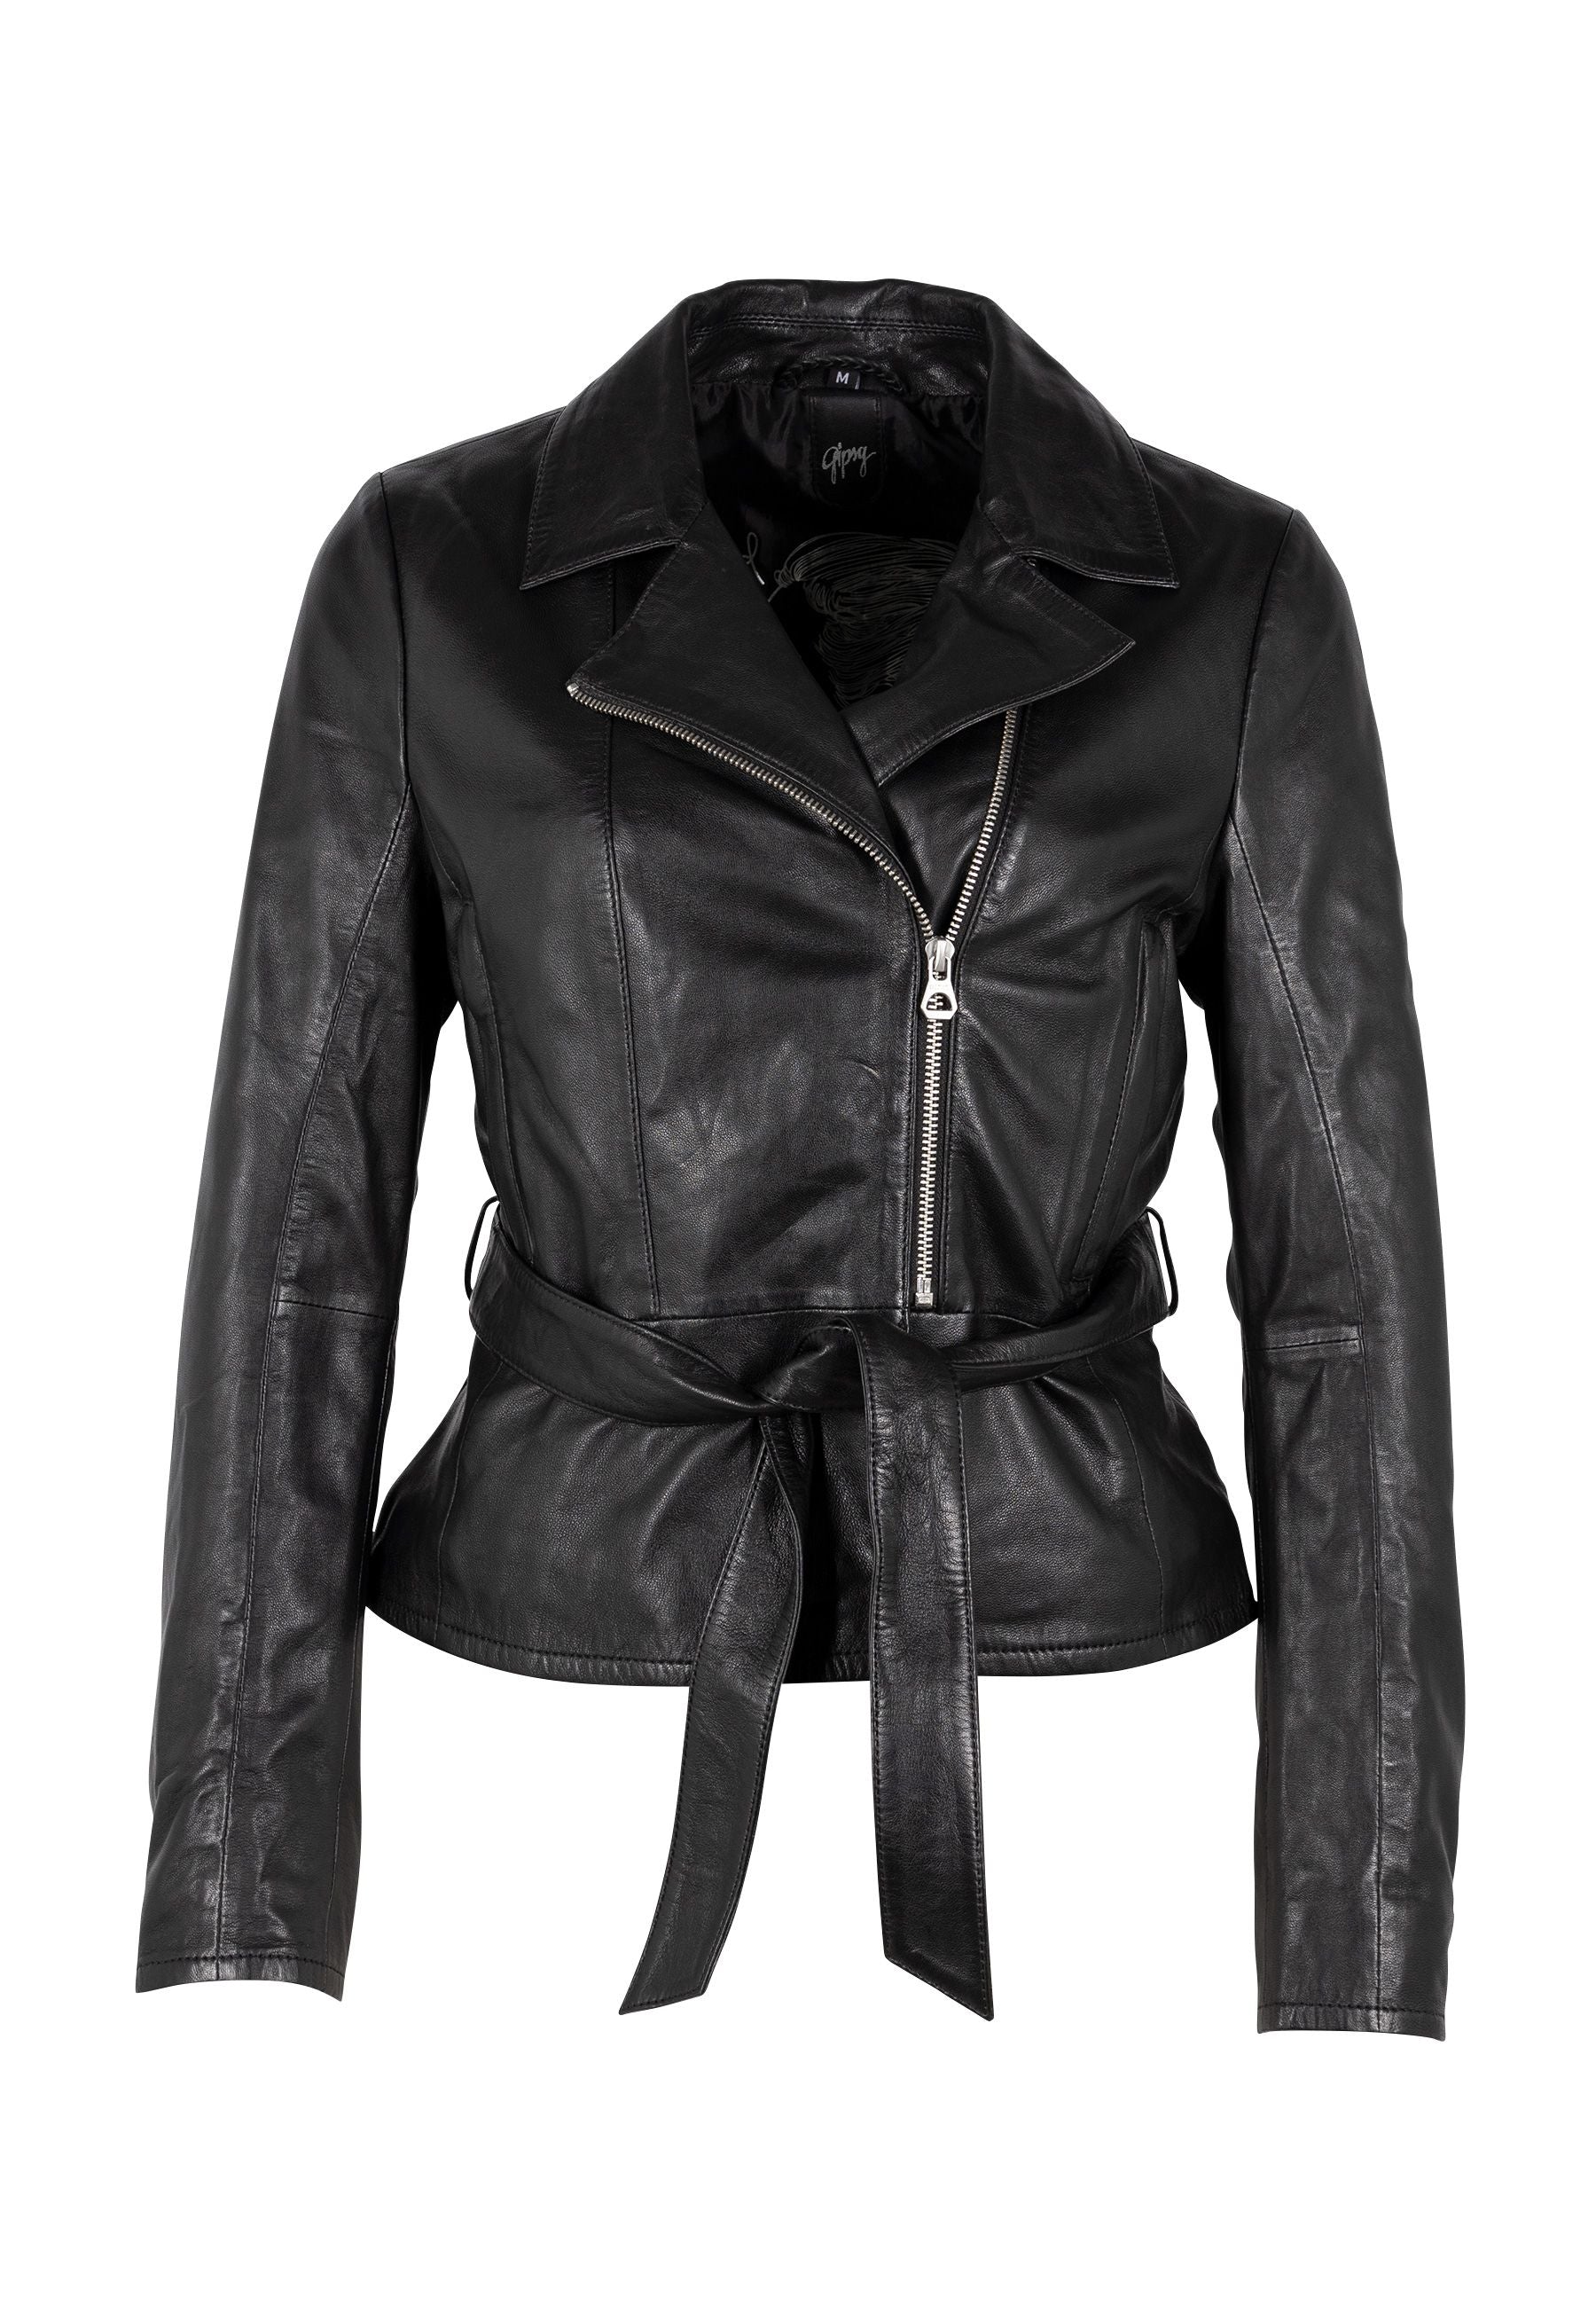 Mauritius Women's Camila Leather Jacket, Black